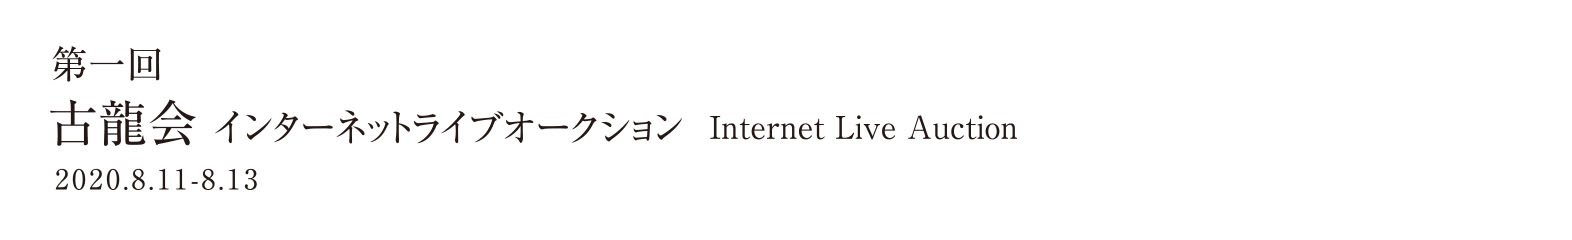 第一回インターネットライブオークション 2020.8.11-8.13